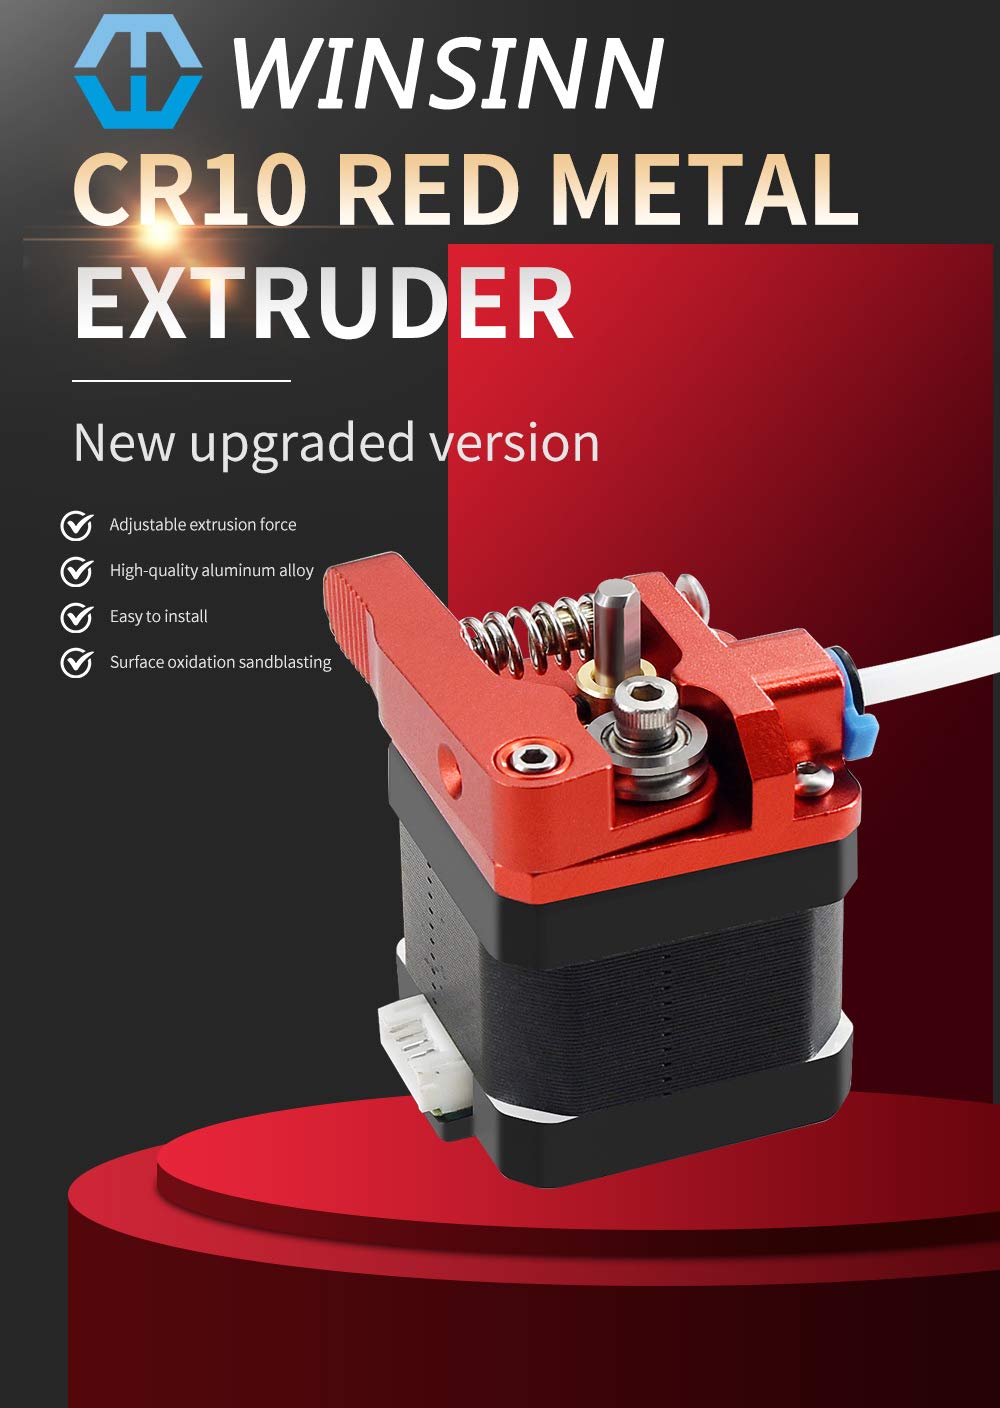 Upgrade the Ender 3 V2 Extruder in 5 Minutes - Aluminum Extruder Upgrade 